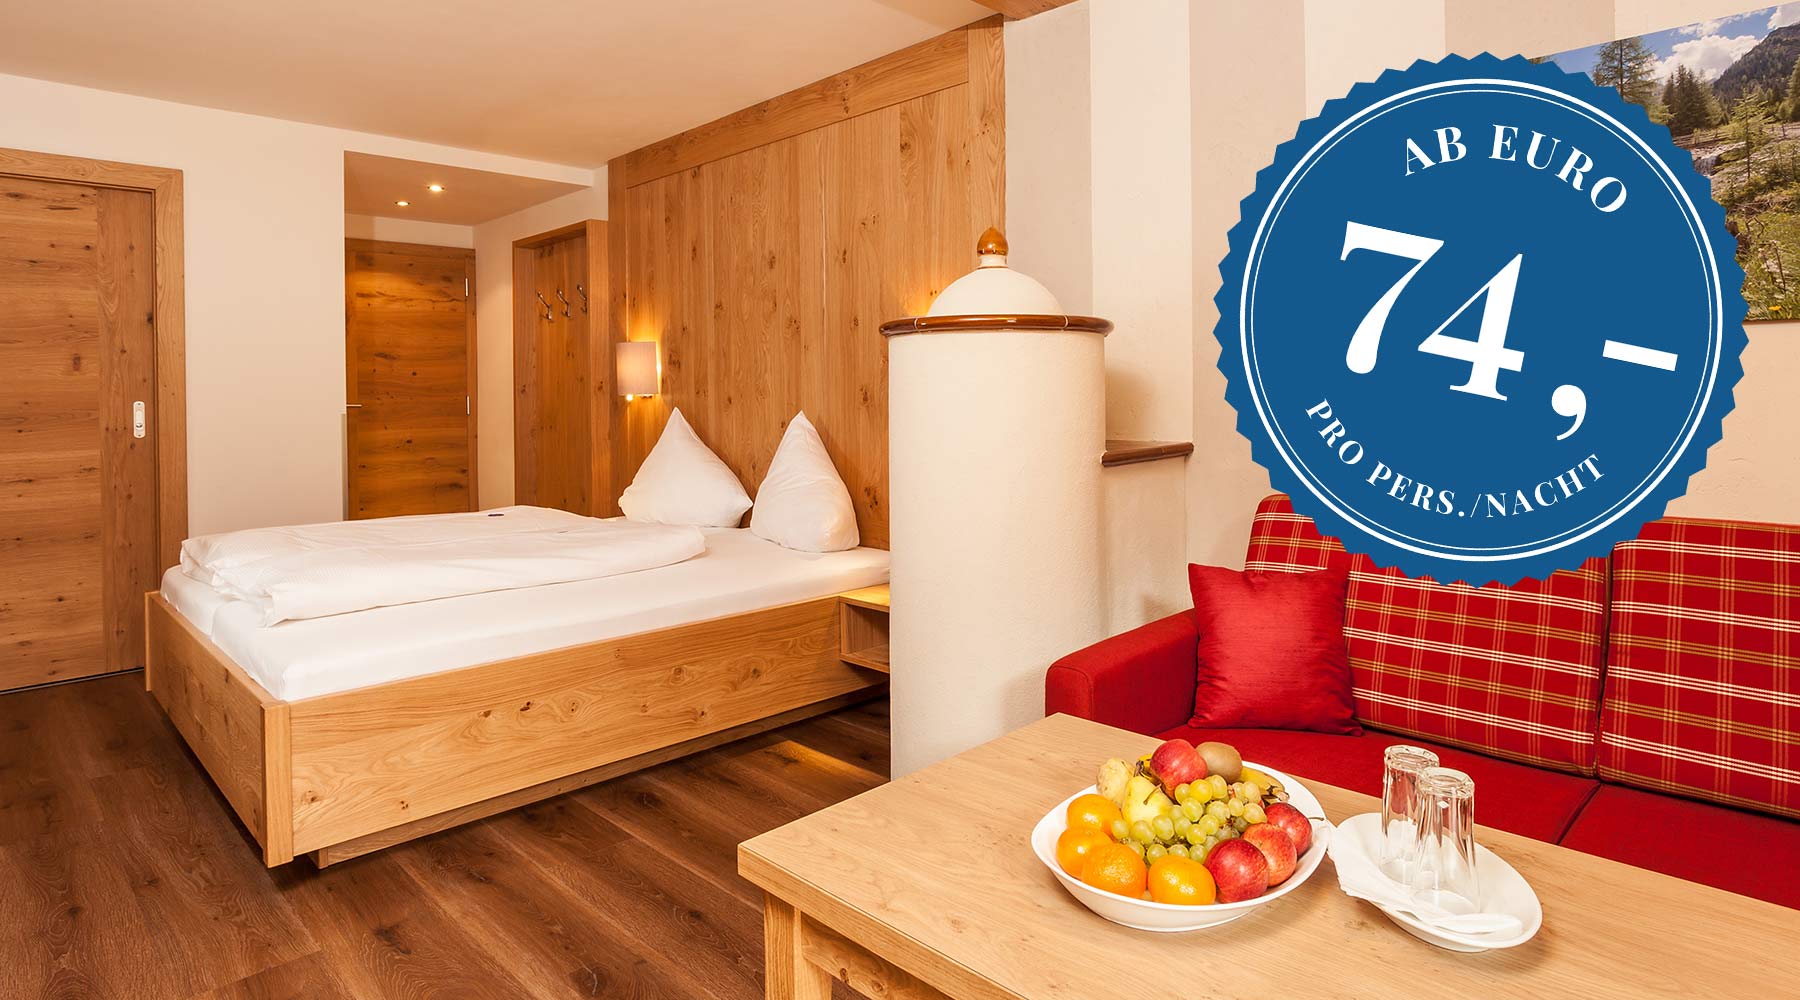 Doppelzimmer Tirol De Luxe Ab € 74,00 | Hotel Stern**** Elbigenalp